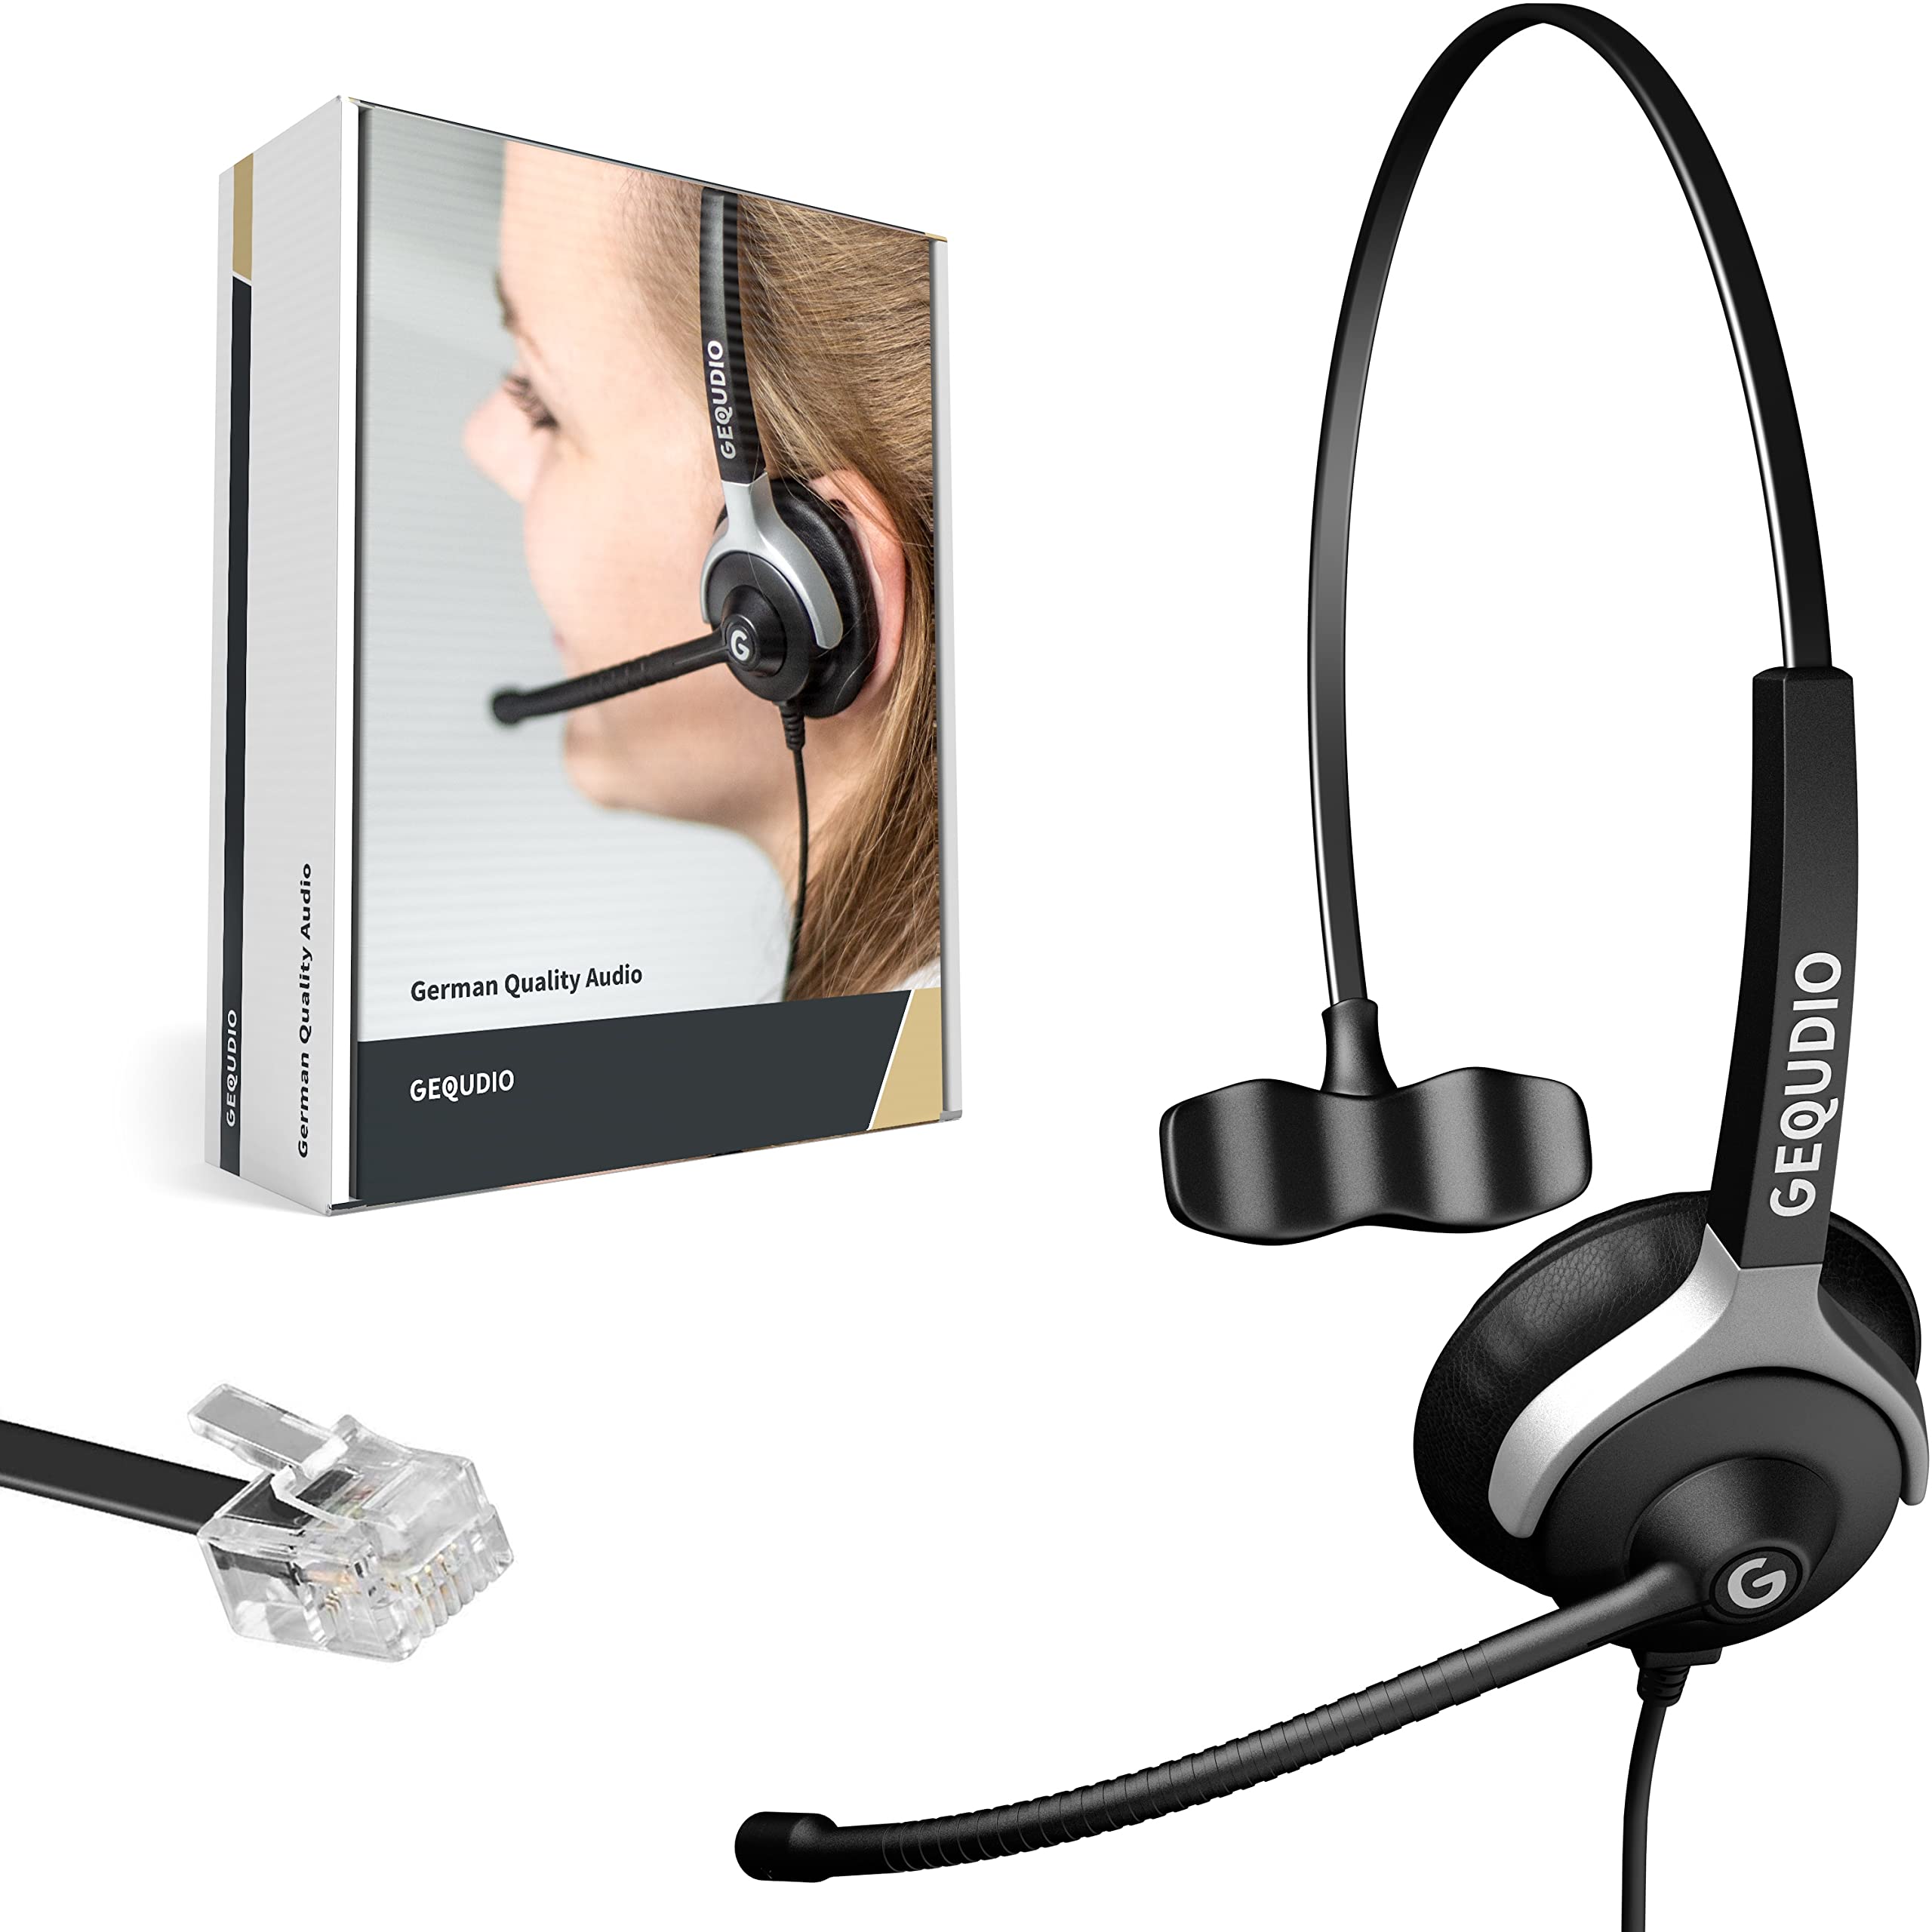 GEQUDIO Headset kompatibel mit Unify OpenStage 30 40 60 80 und OpenScape Serie Telefon - inklusive RJ Kabel - Kopfhörer & Mikrofon mit Ersatz Polster - besonders leicht 60g (1-Ohr)